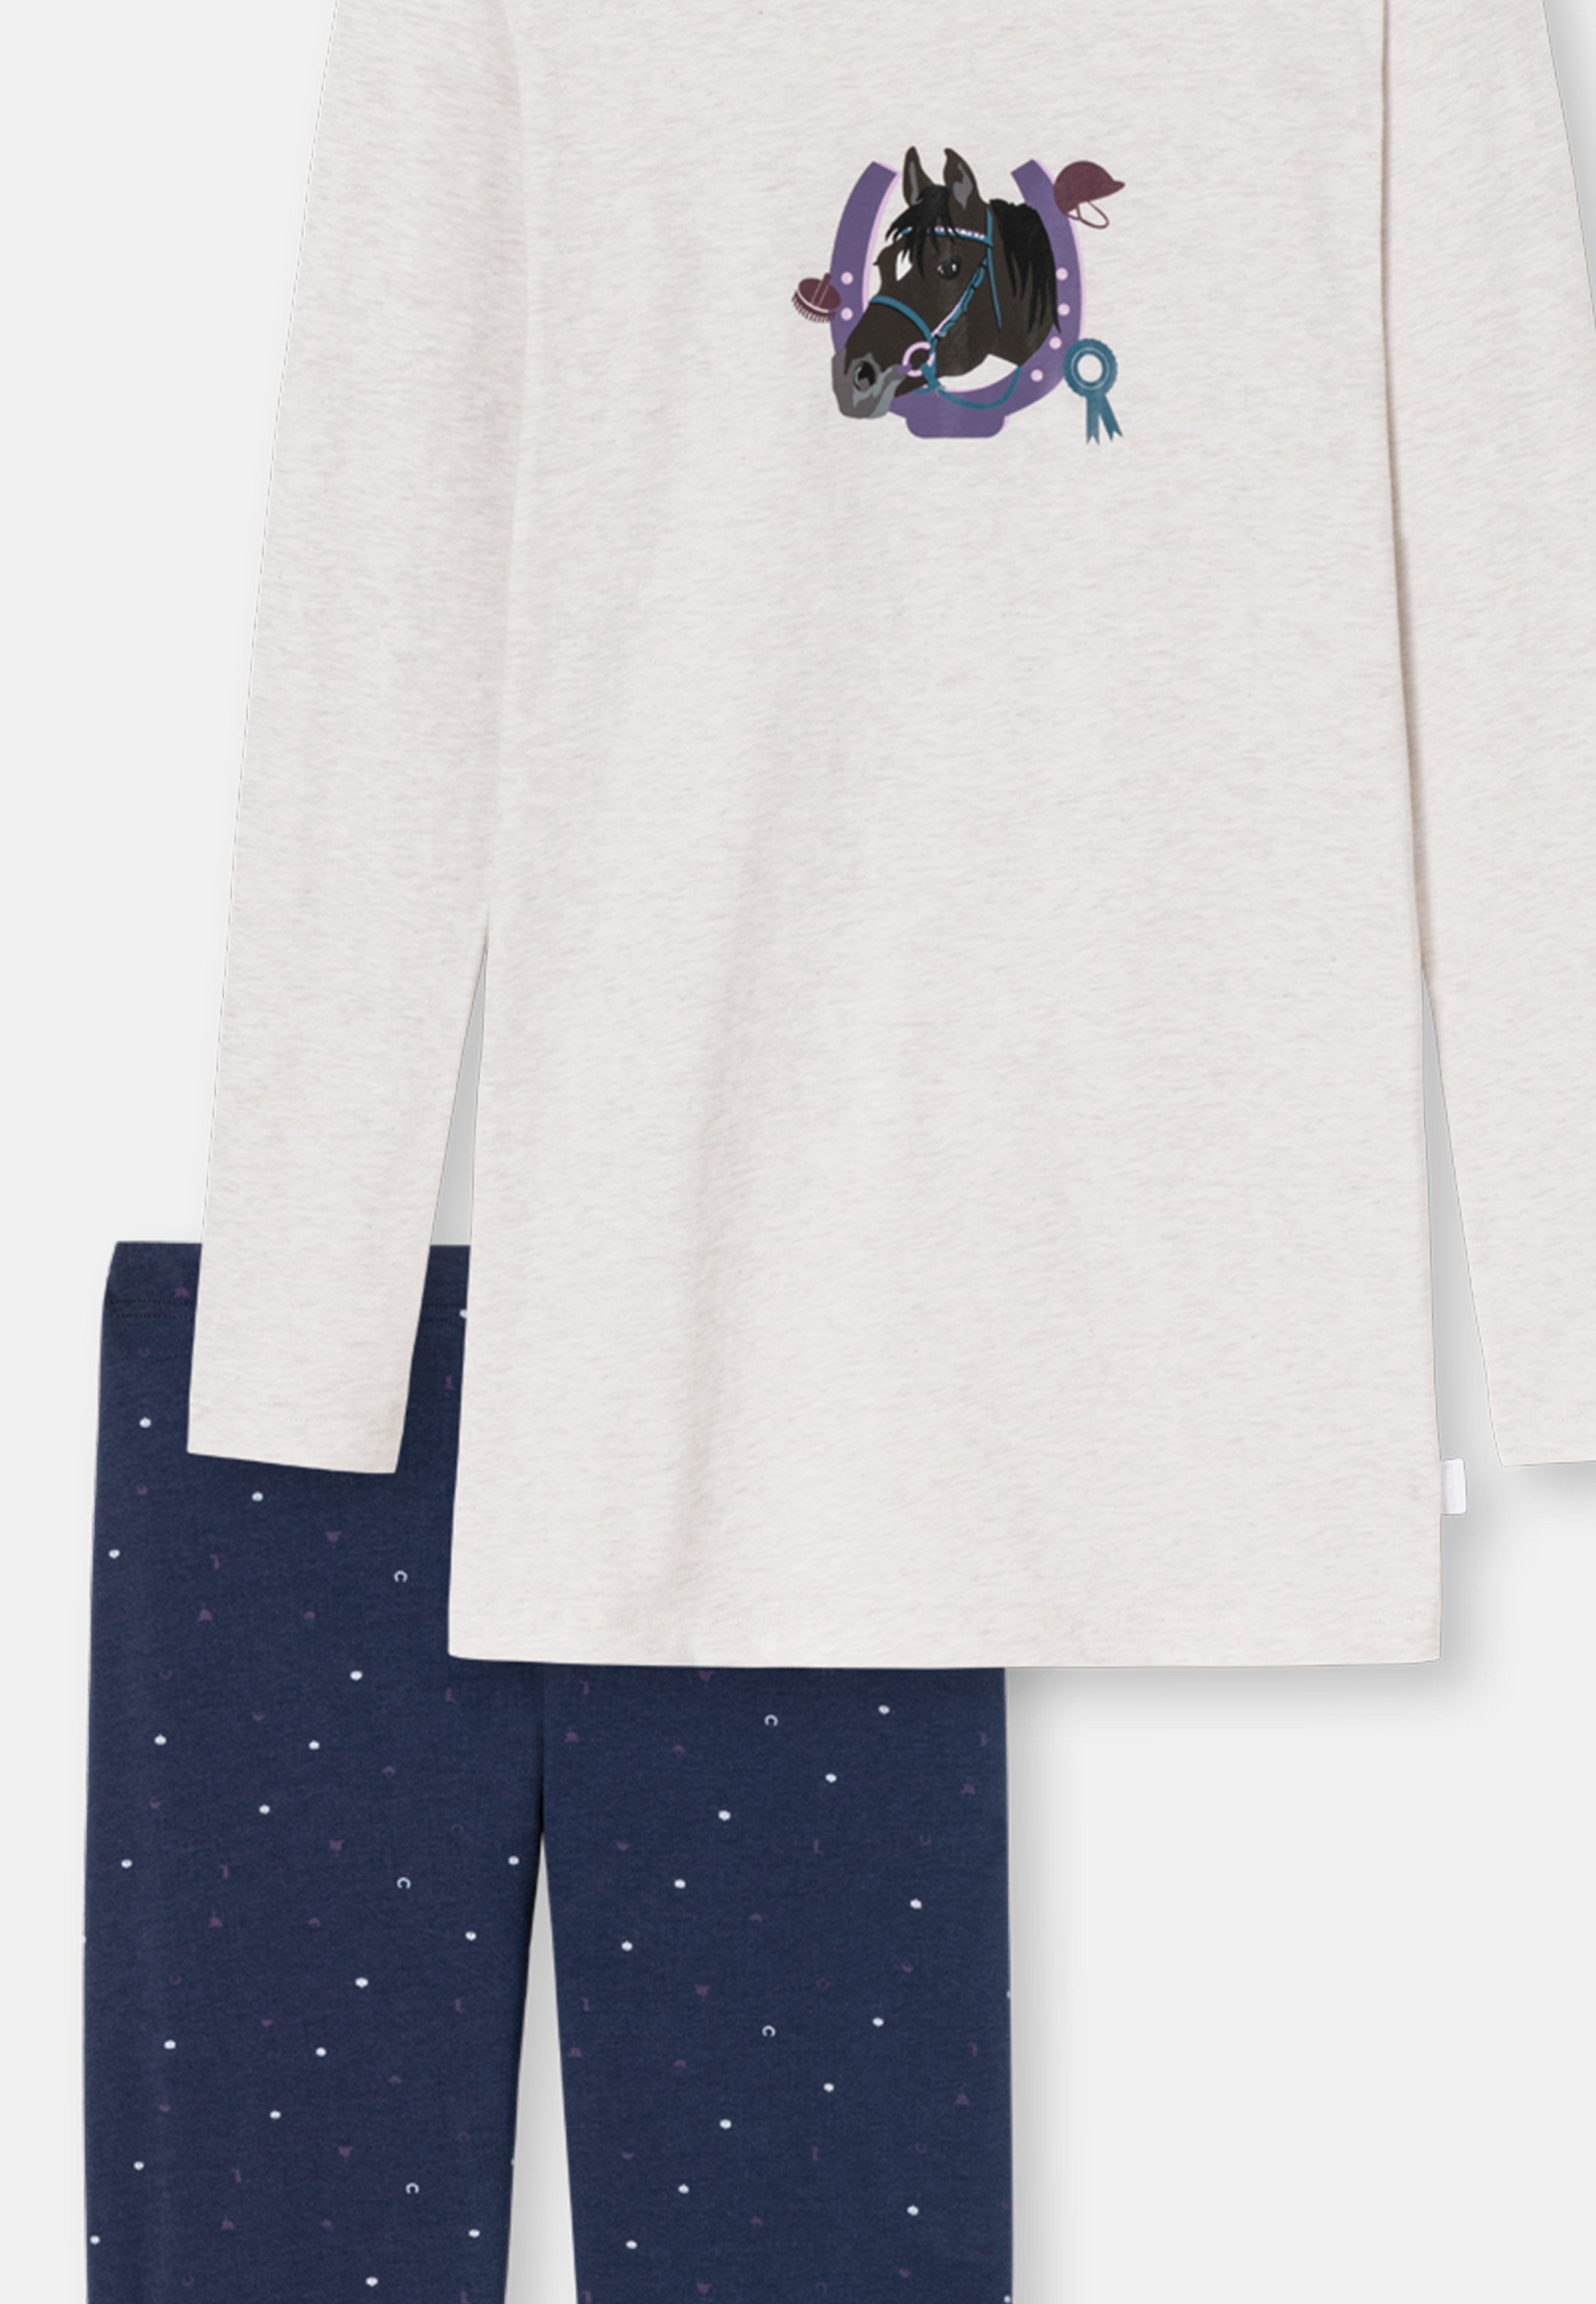 Langarm Horse Baumwolle (Set, 2 - Beige-Melange World Pyjama - tlg) Schlafanzug Cotton Organic Schiesser